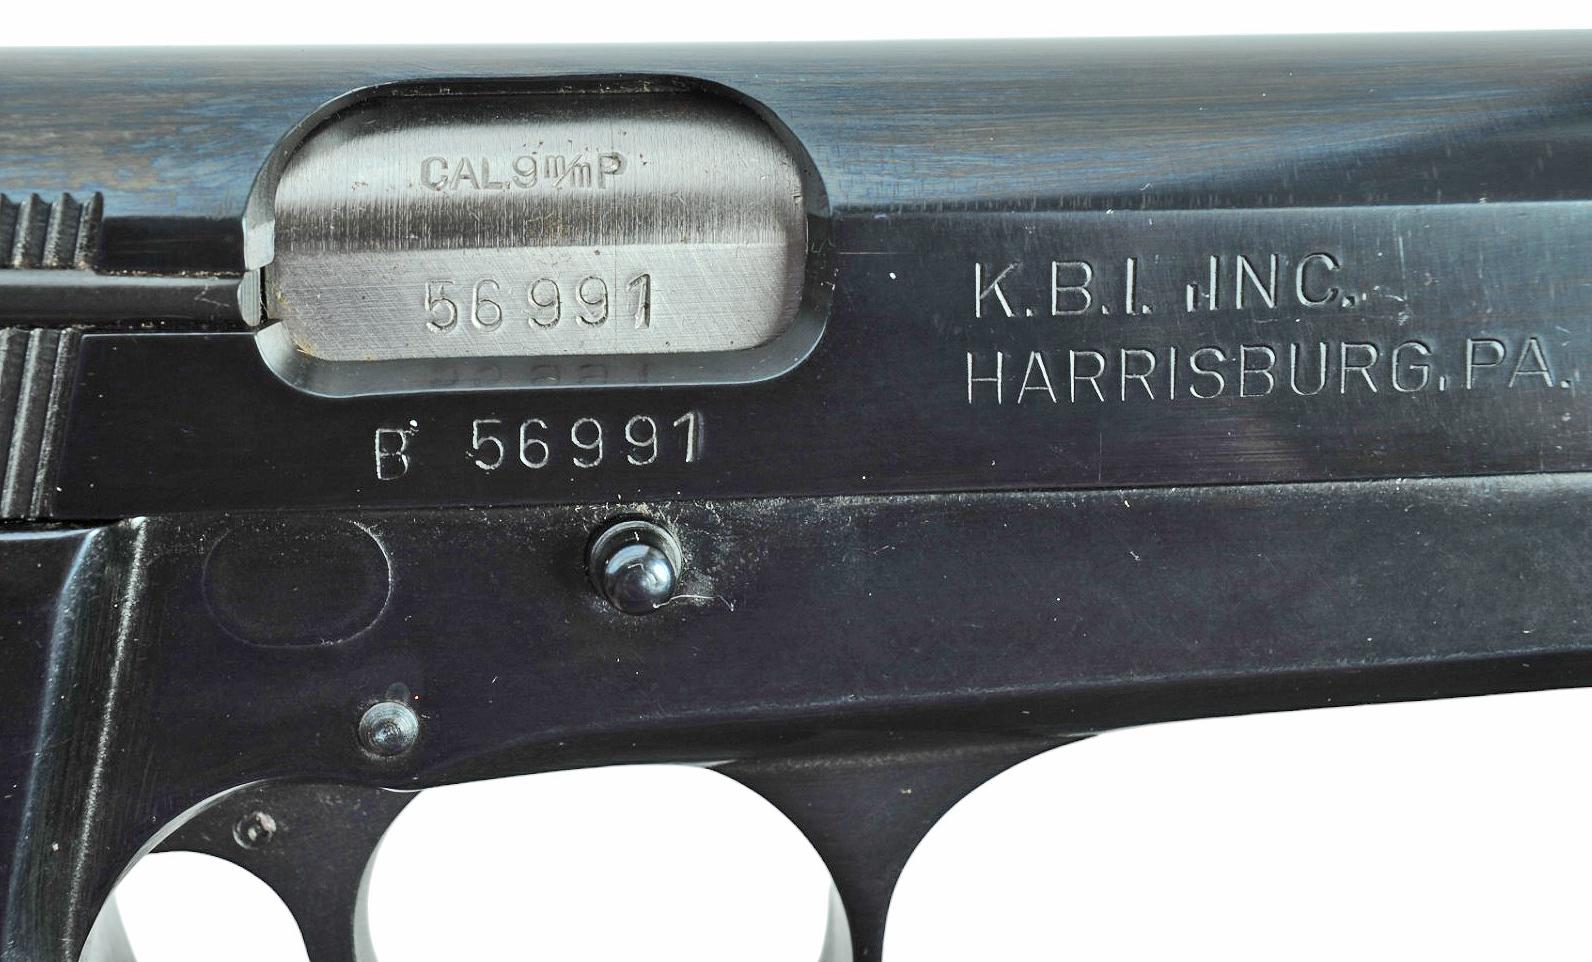 Hungarian PJK-9HP 9MM Semi-auto Pistol FFL Required: B56991 (J1)